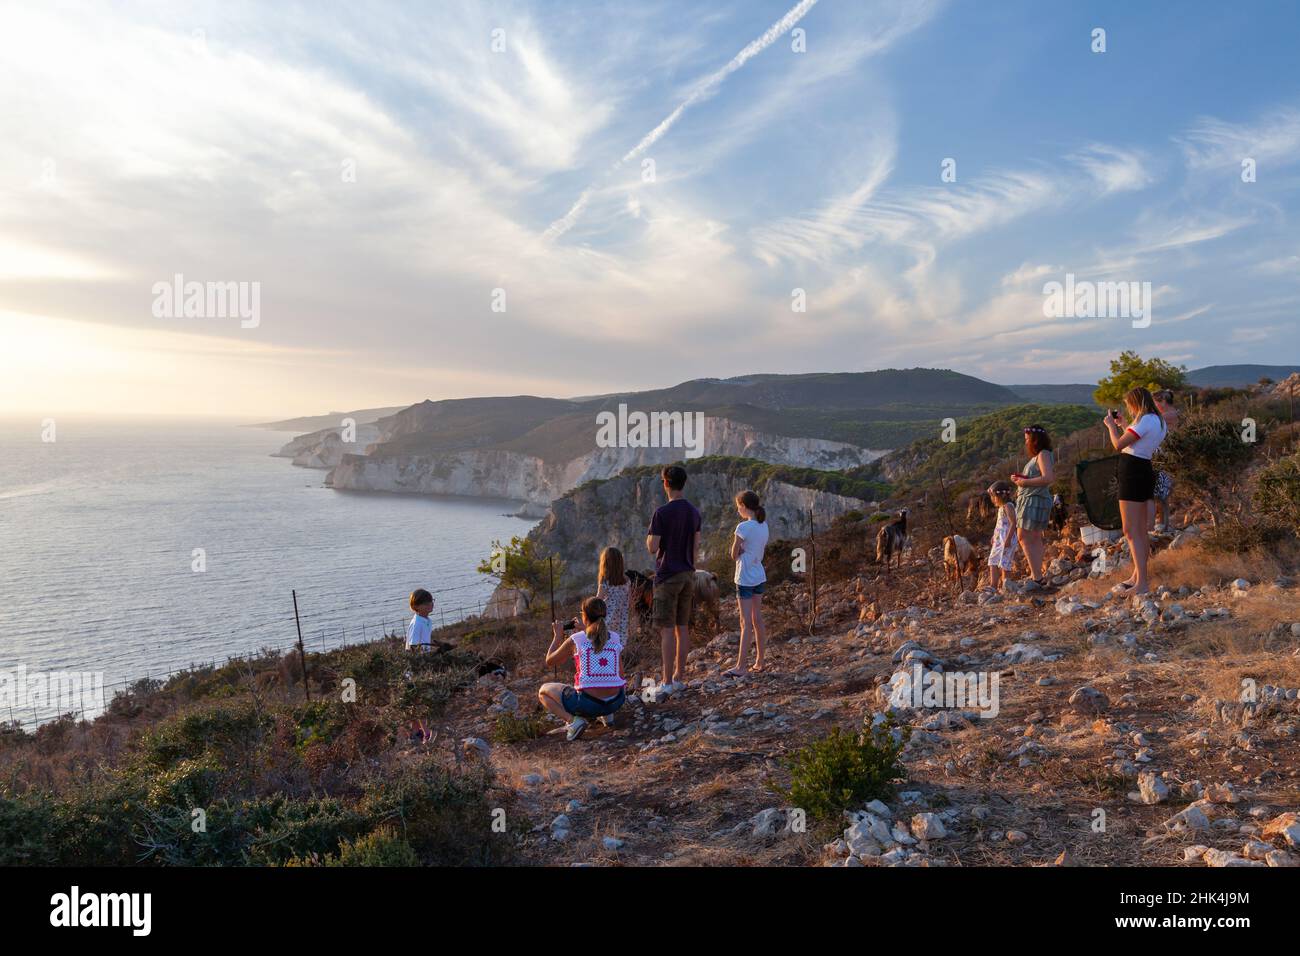 Zante, Grecia - 19 agosto 2016: I turisti scattano foto della costa a Capo Keri. Isola greca di Zante, Mar Ionio Foto Stock